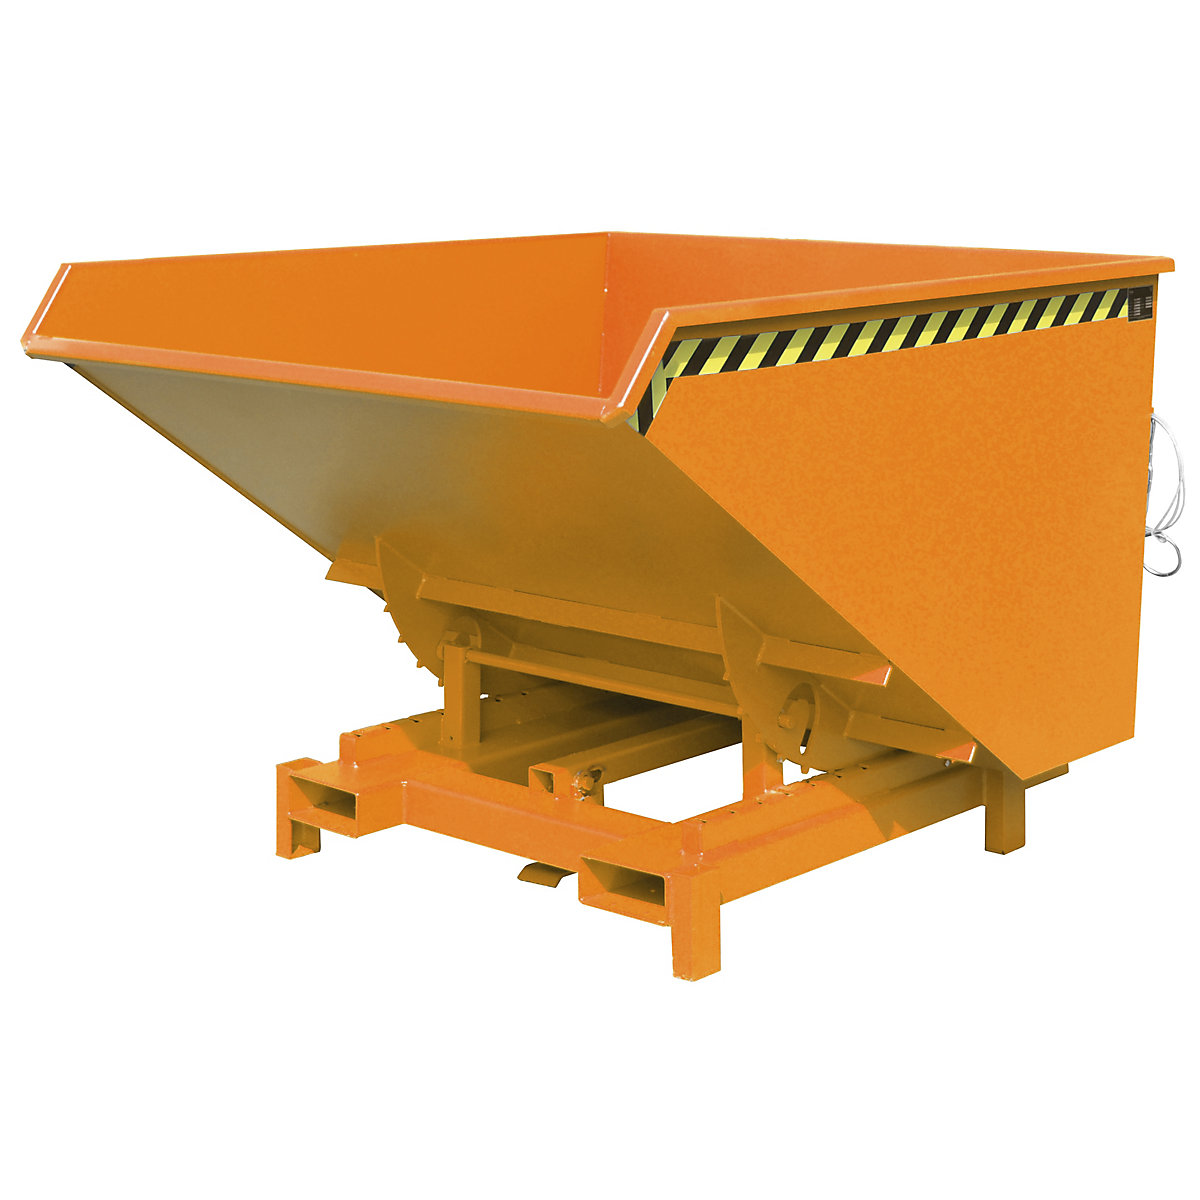 Recipient basculant pentru sarcini grele – eurokraft pro, volum 2,1 m³, capacitate portantă 4000 kg, portocaliu RAL 2000-8